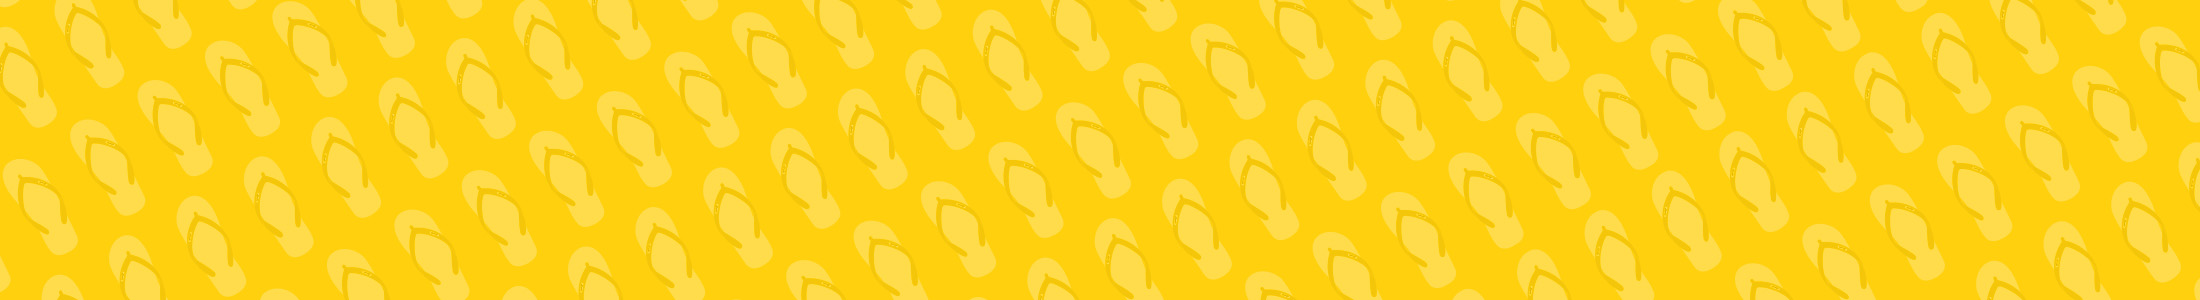 bg yellow slippers